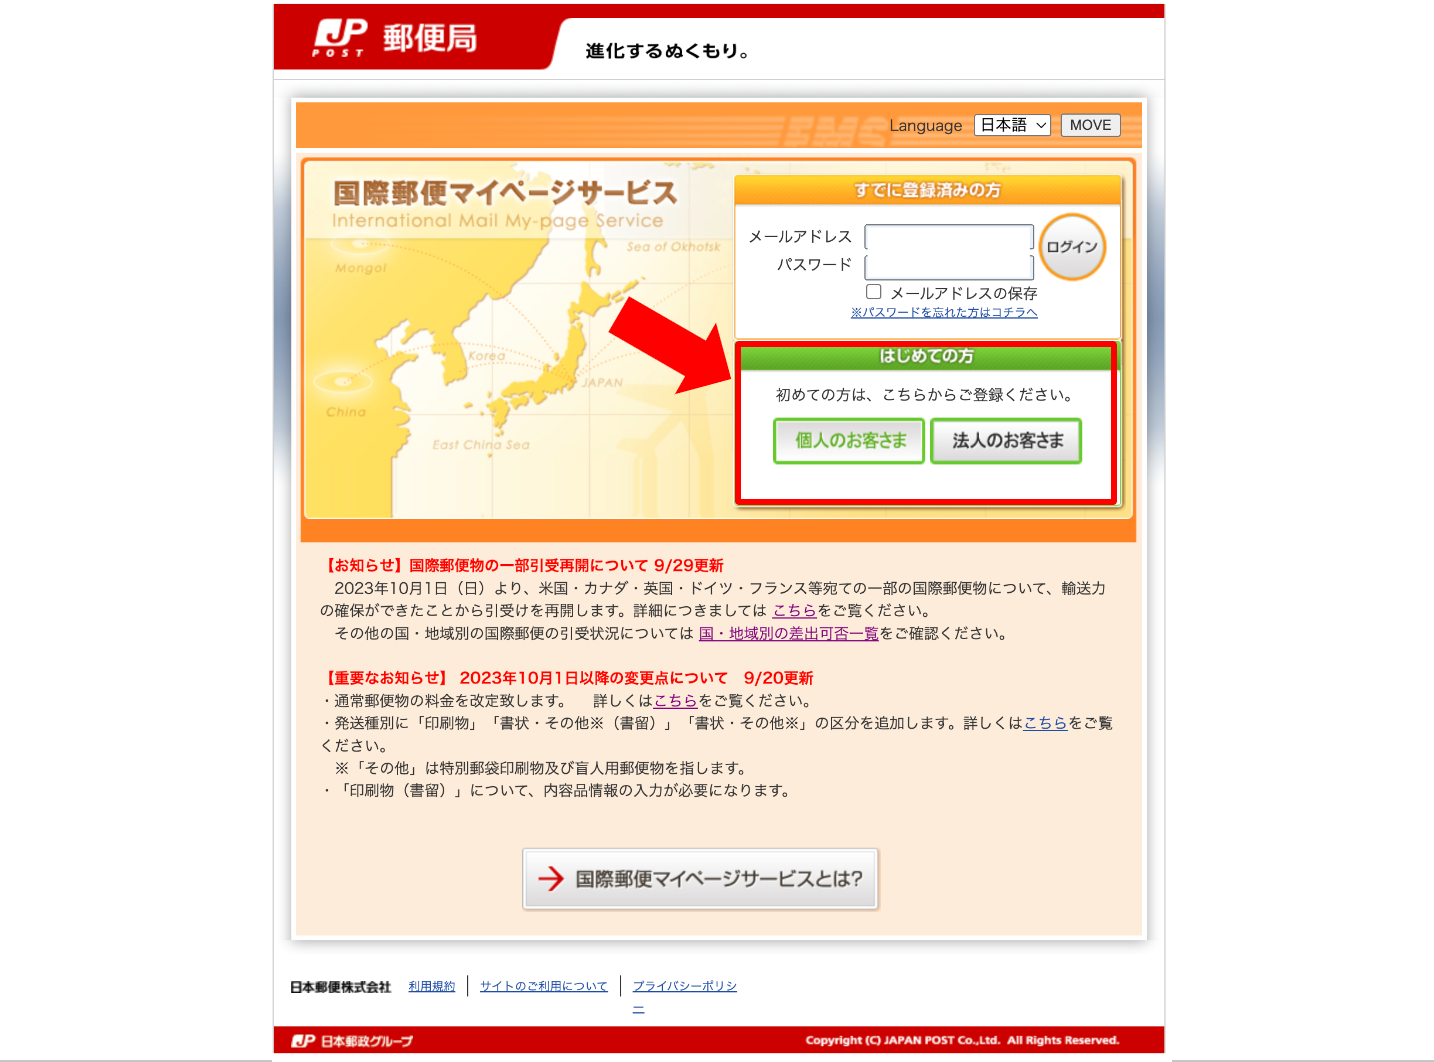 日本郵便国際郵便マイページサービス